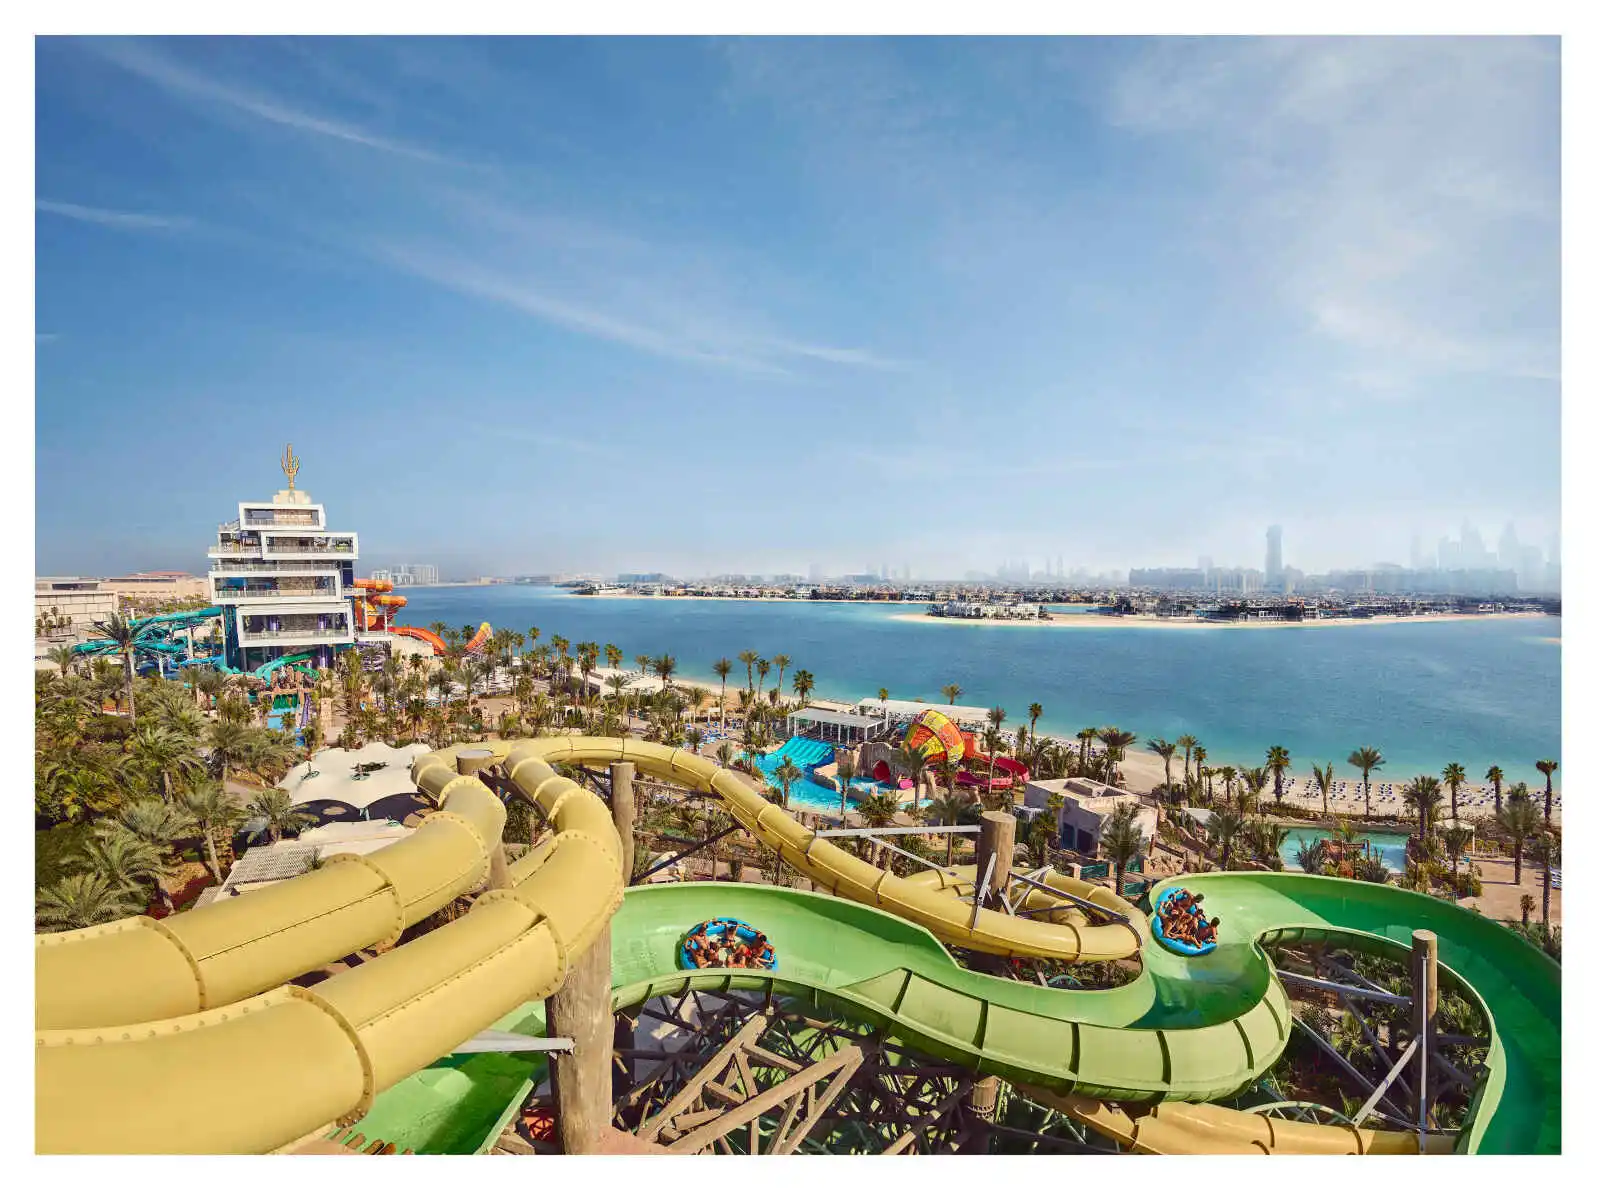 Aquaventure World, Atlantis The Palm, Dubaï, Émirats arabes unis